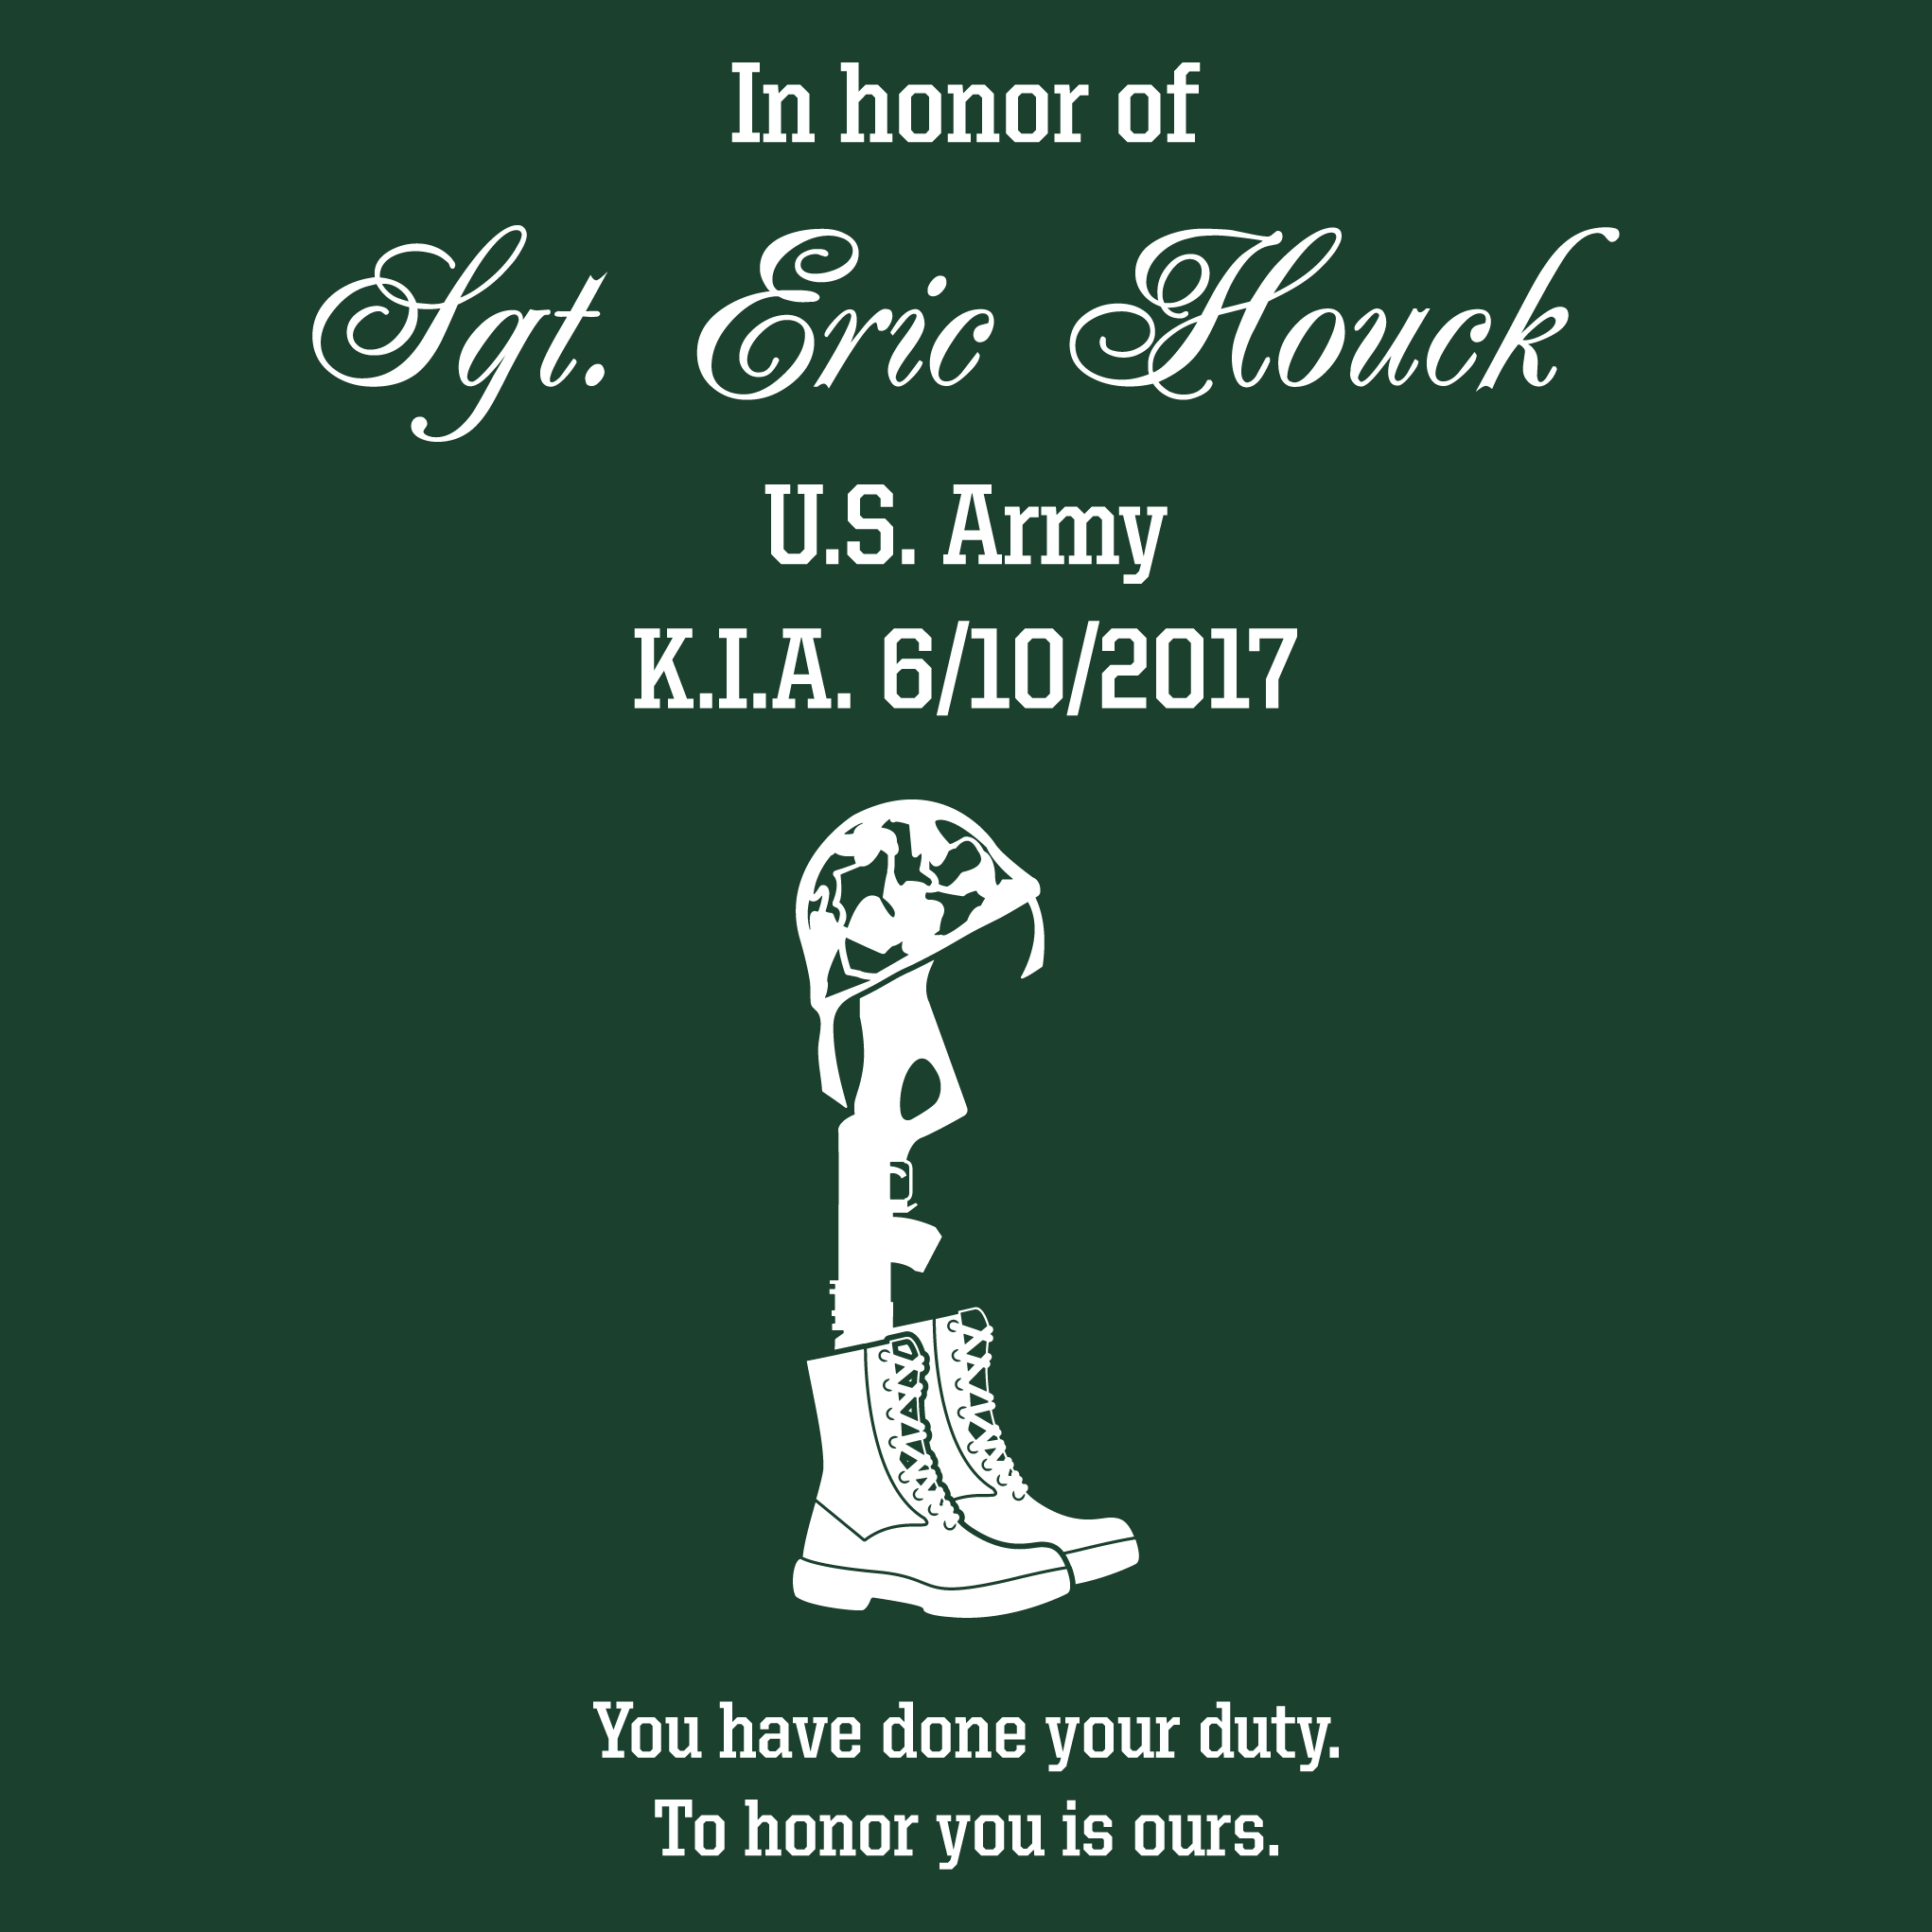 Honoring Sgt. Eric Houck shirt design - zoomed